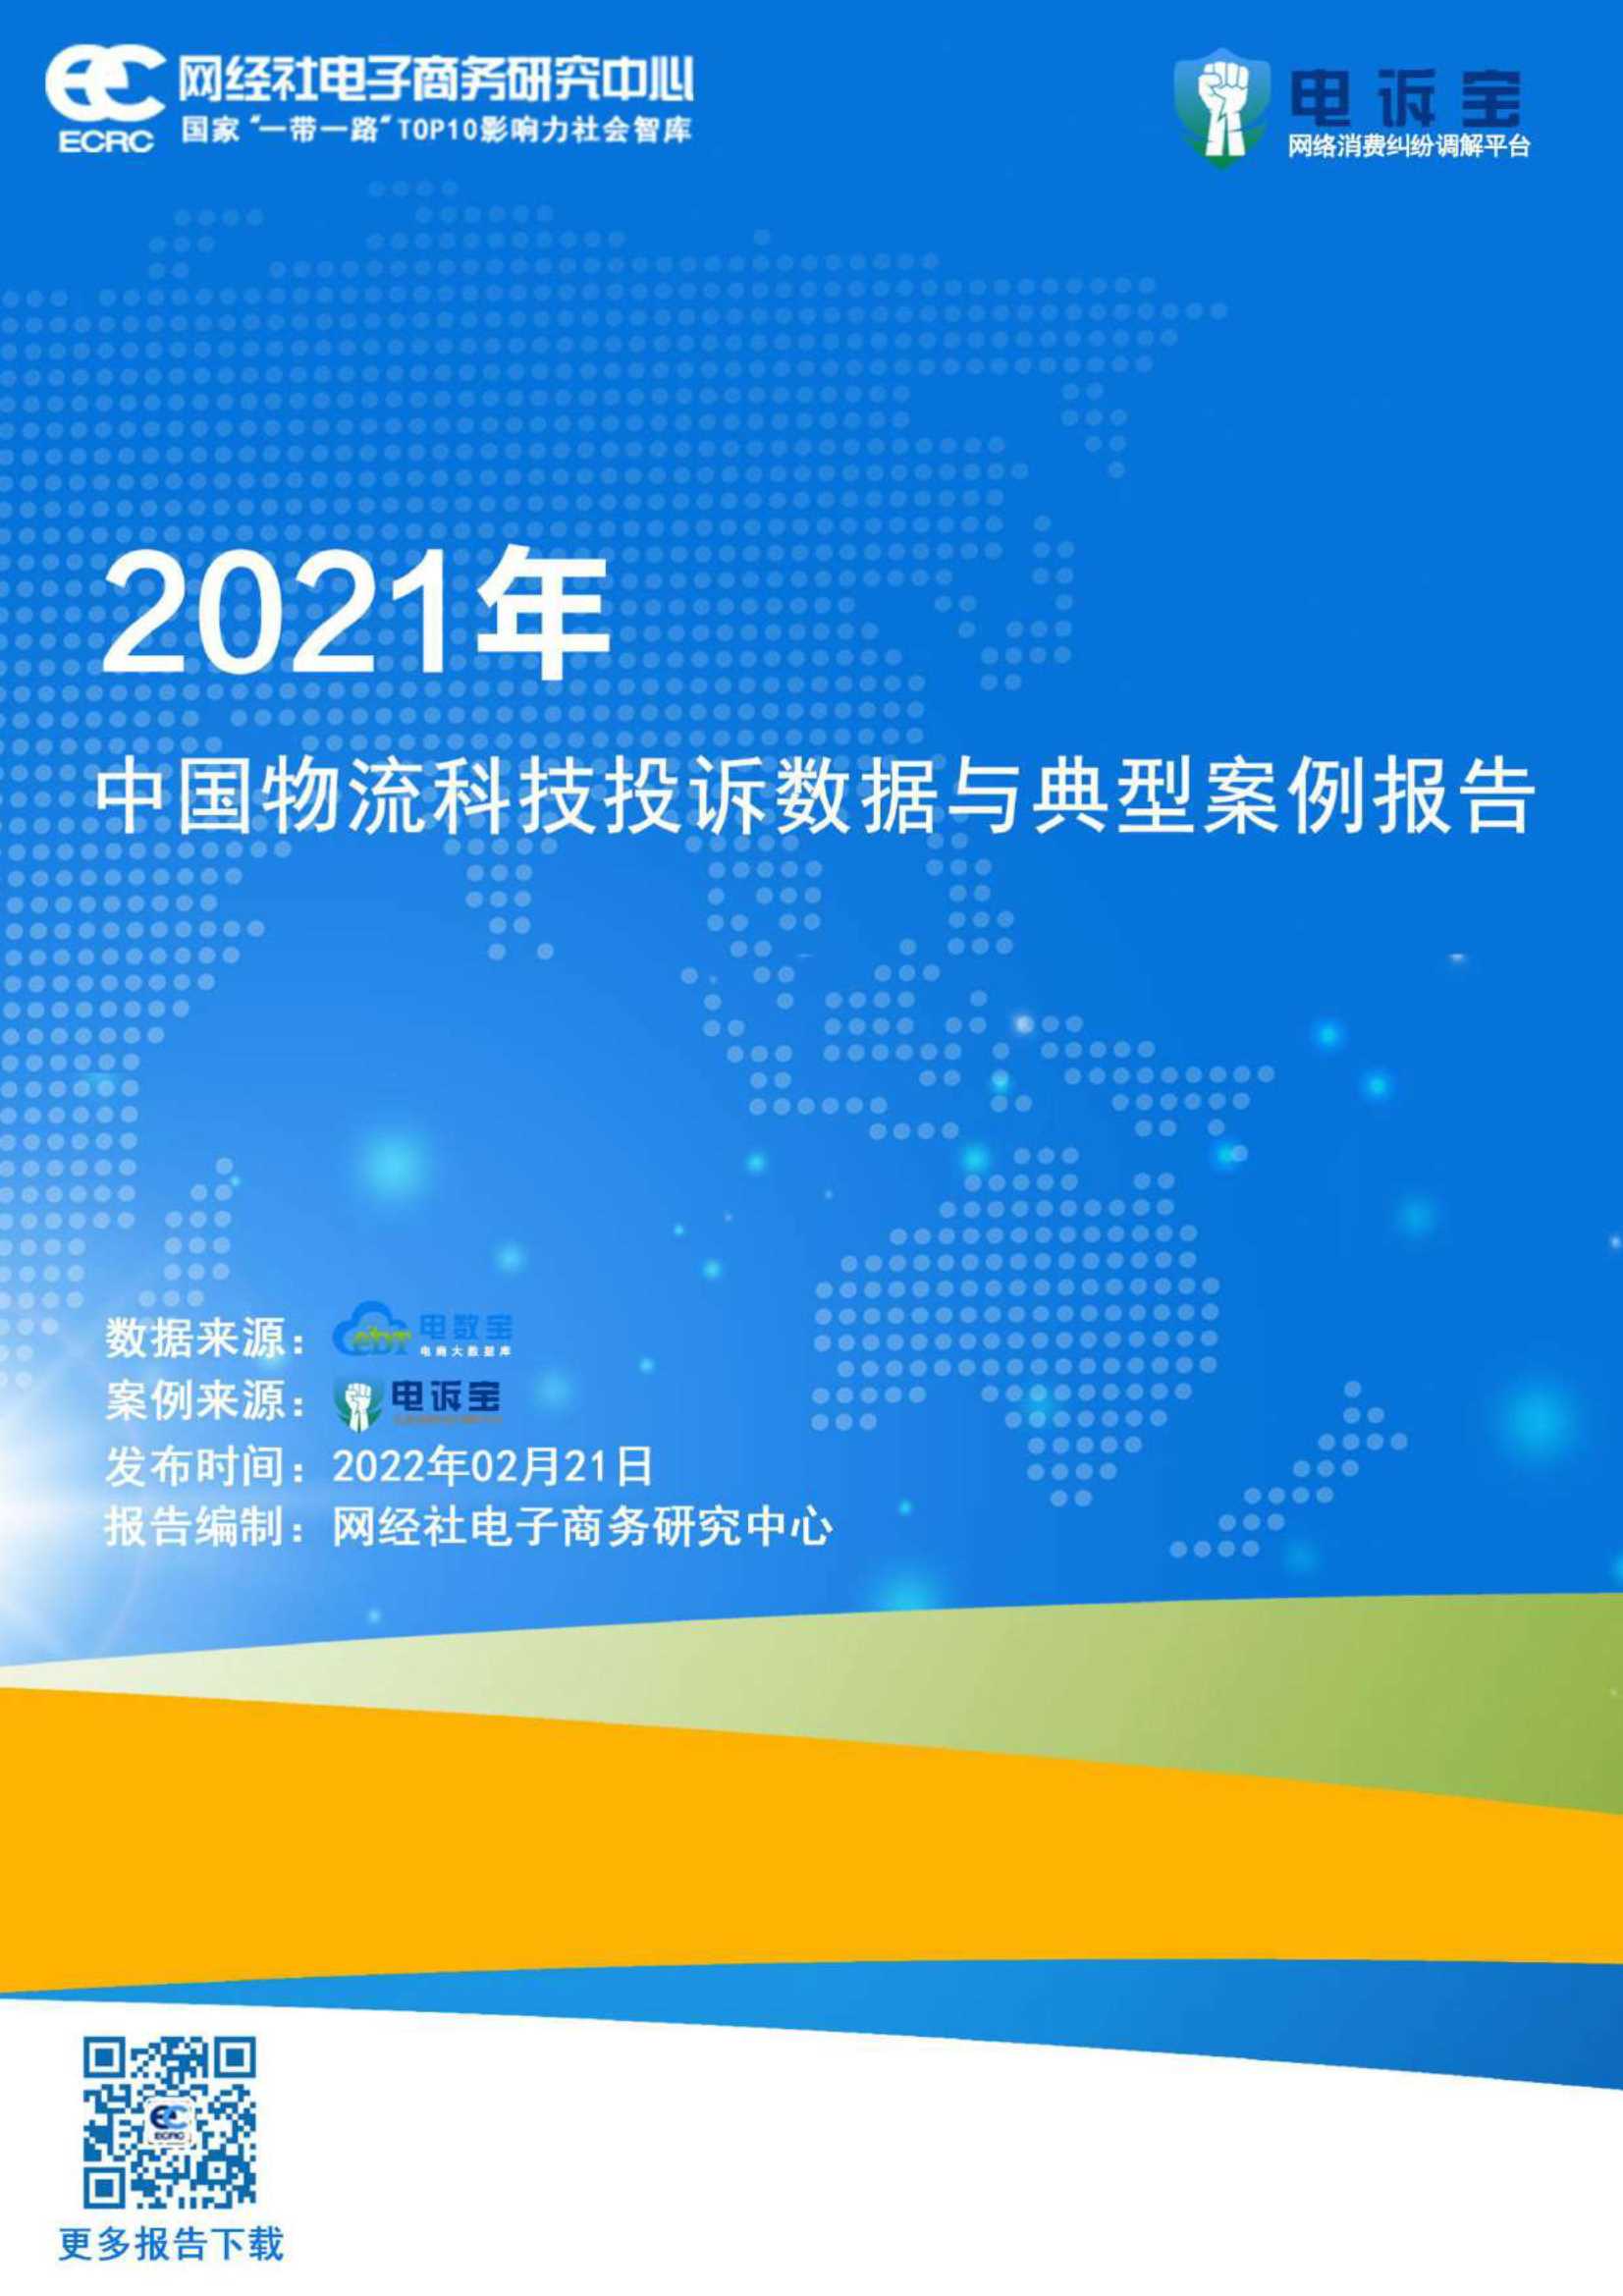 网经社-2021年中国物流科技投诉数据与典型案例报告 -2022.02-24页